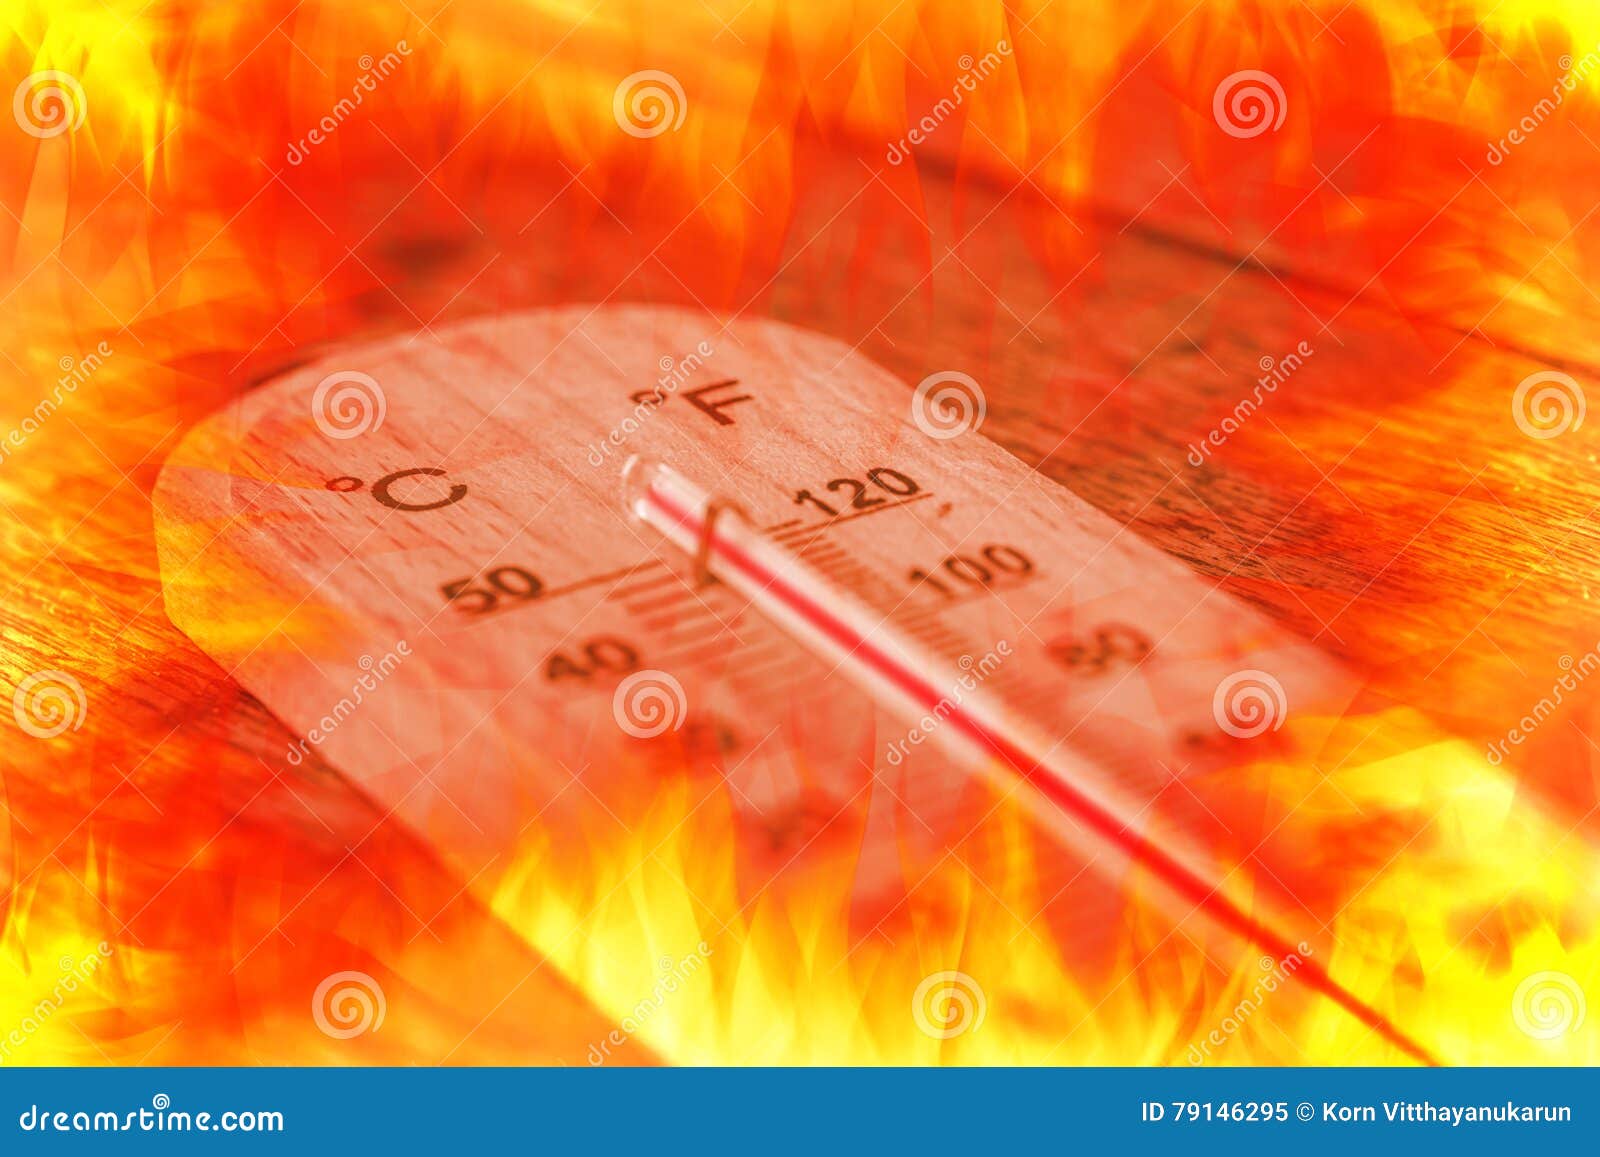 La Chaleur Chaude D'heure D'été Au-dessus Du Feu Image stock - Image du  degré, été: 79146295